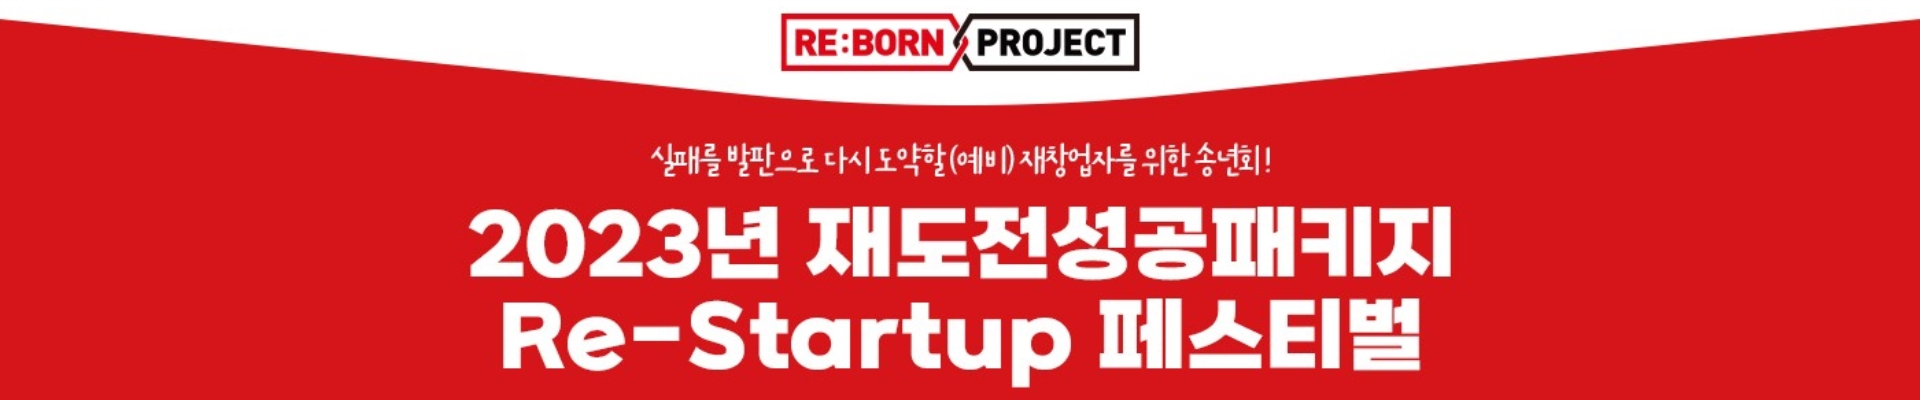 Re-Startup 페스티벌(재창업에 관심 있는 누구나 참석 가능!)